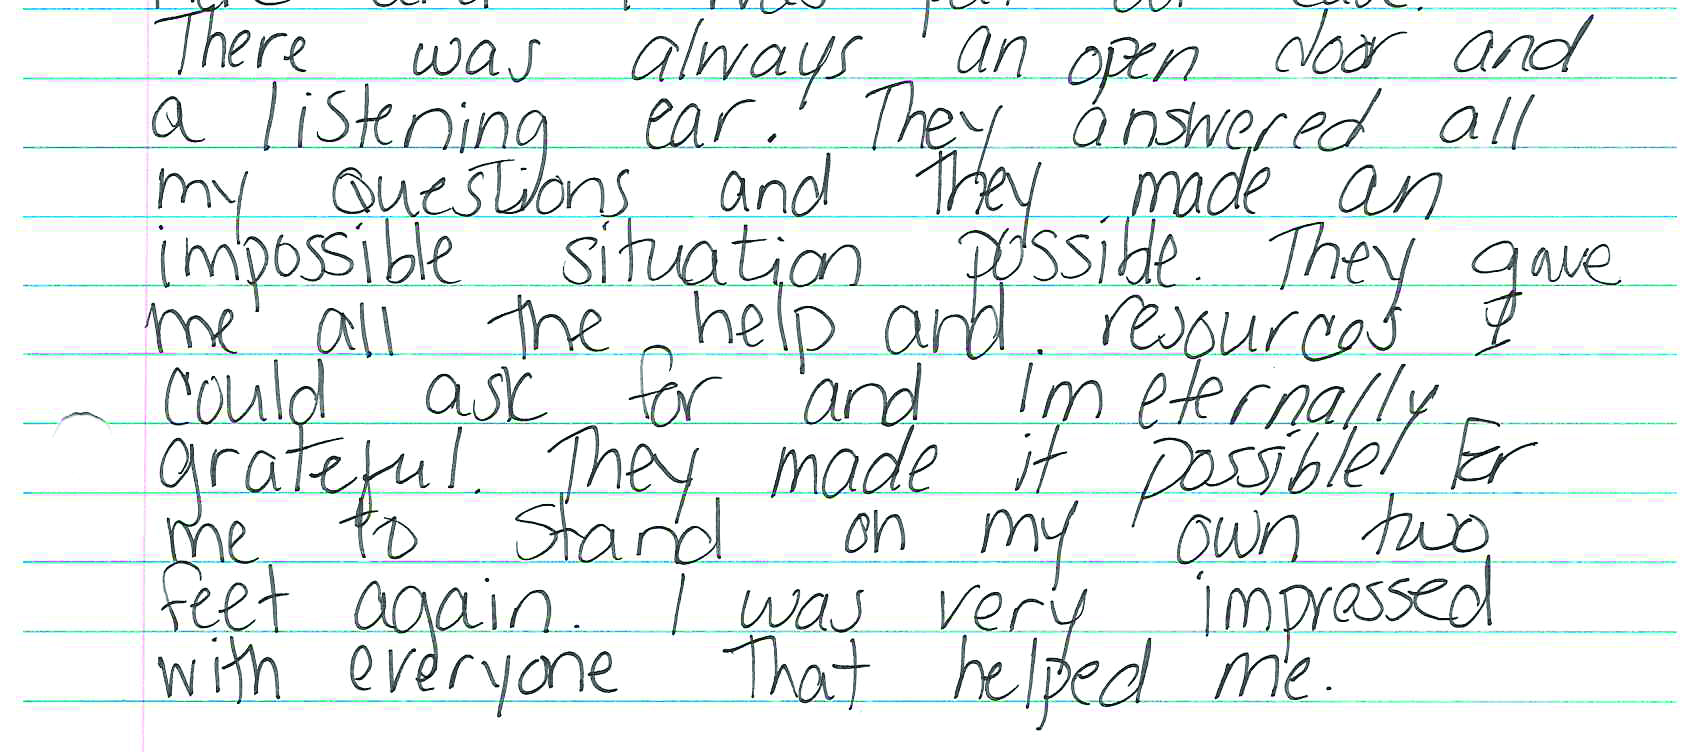 survivor handwritten note part 2